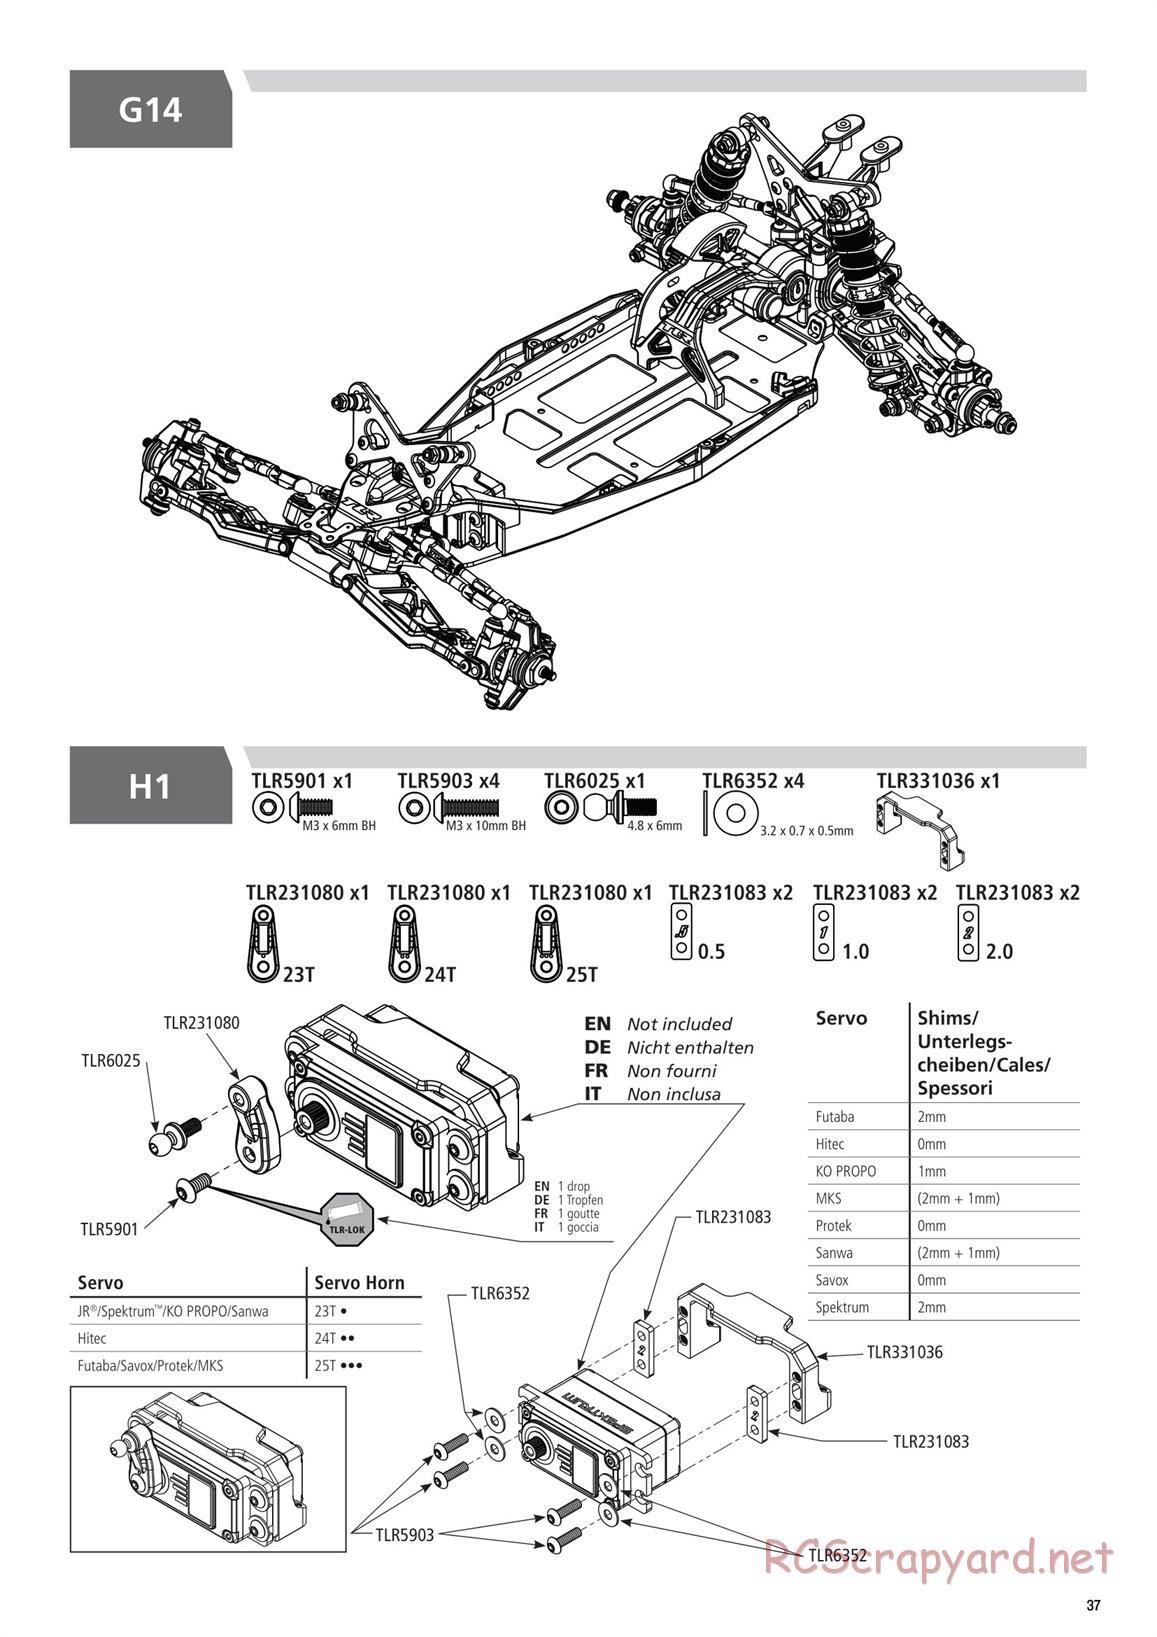 Team Losi - TLR 22 5.0 DC Elite Race - Manual - Page 37